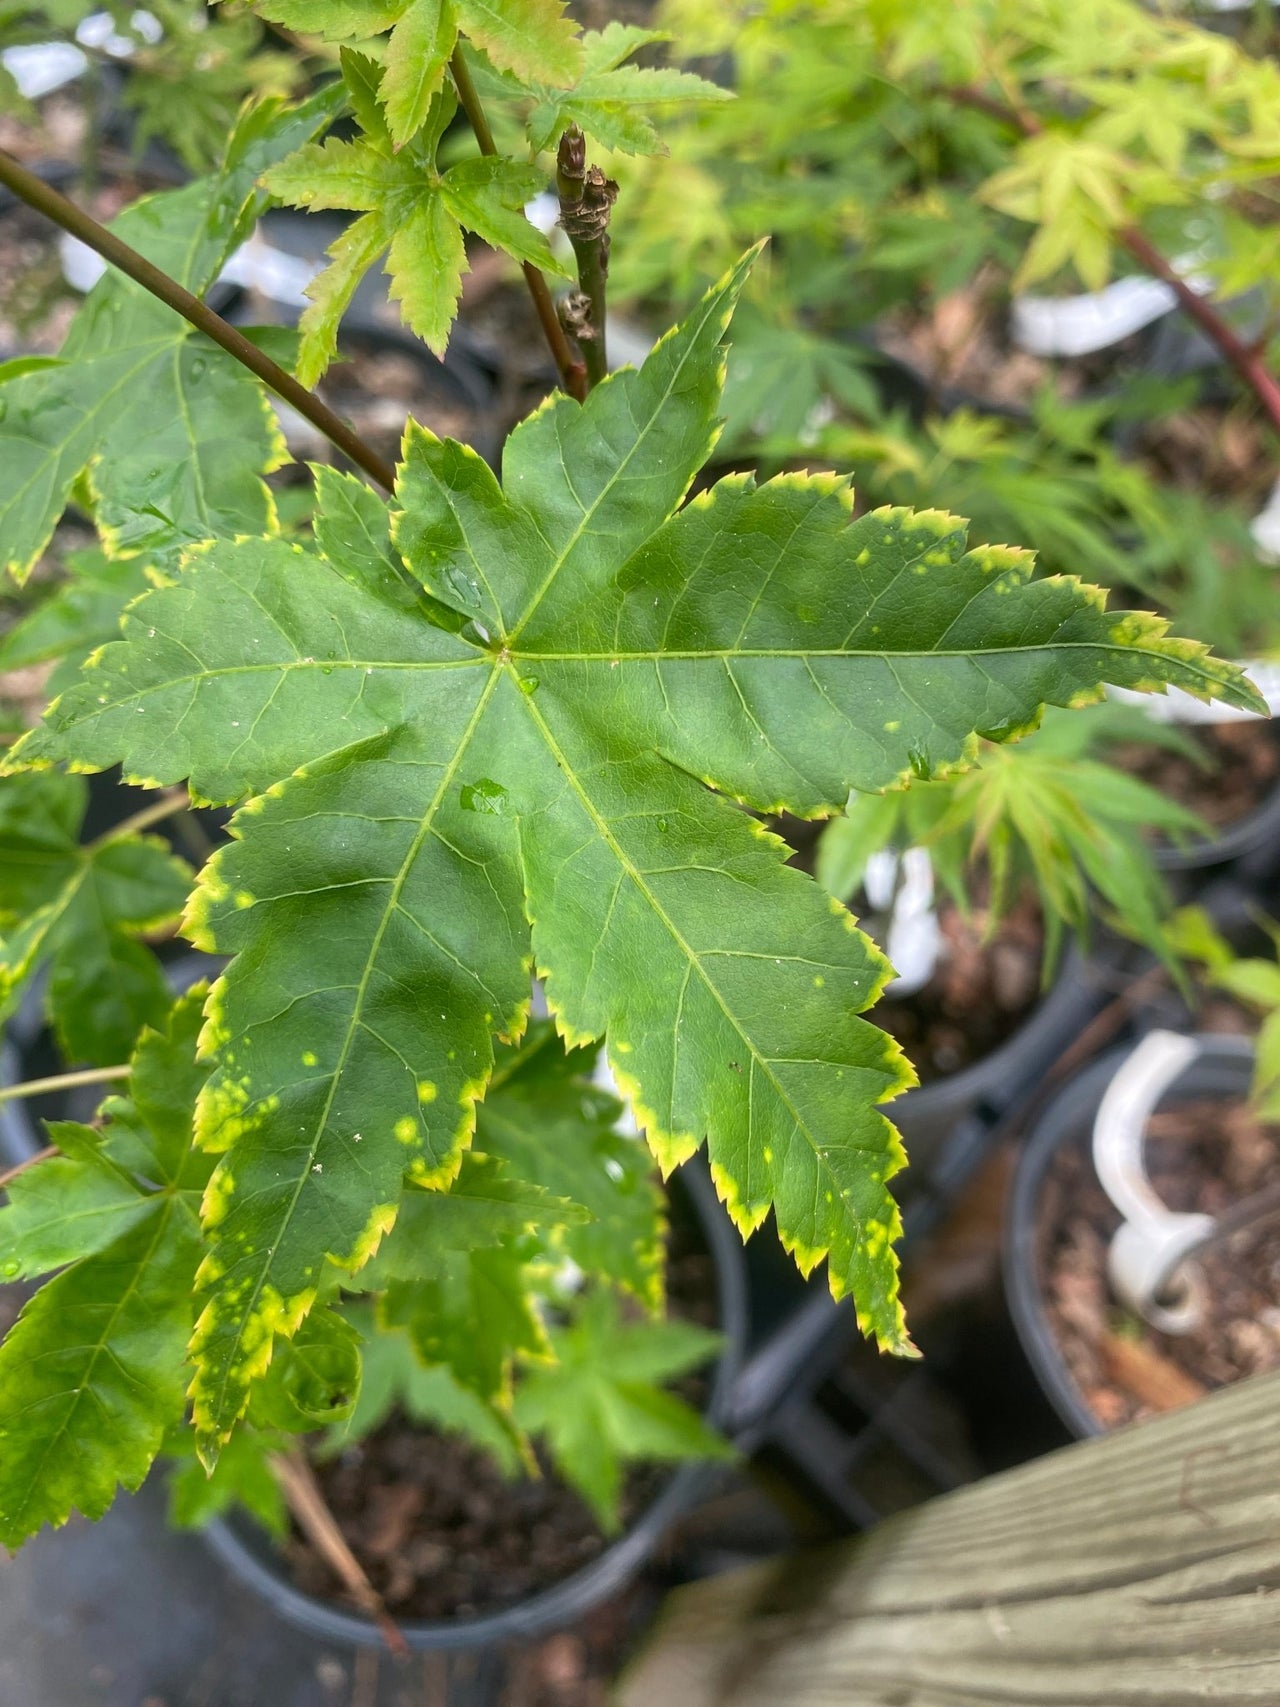 Acer palmatum 'Sagara nishiki' Variegated Japanese Maple - Maple Ridge Nursery